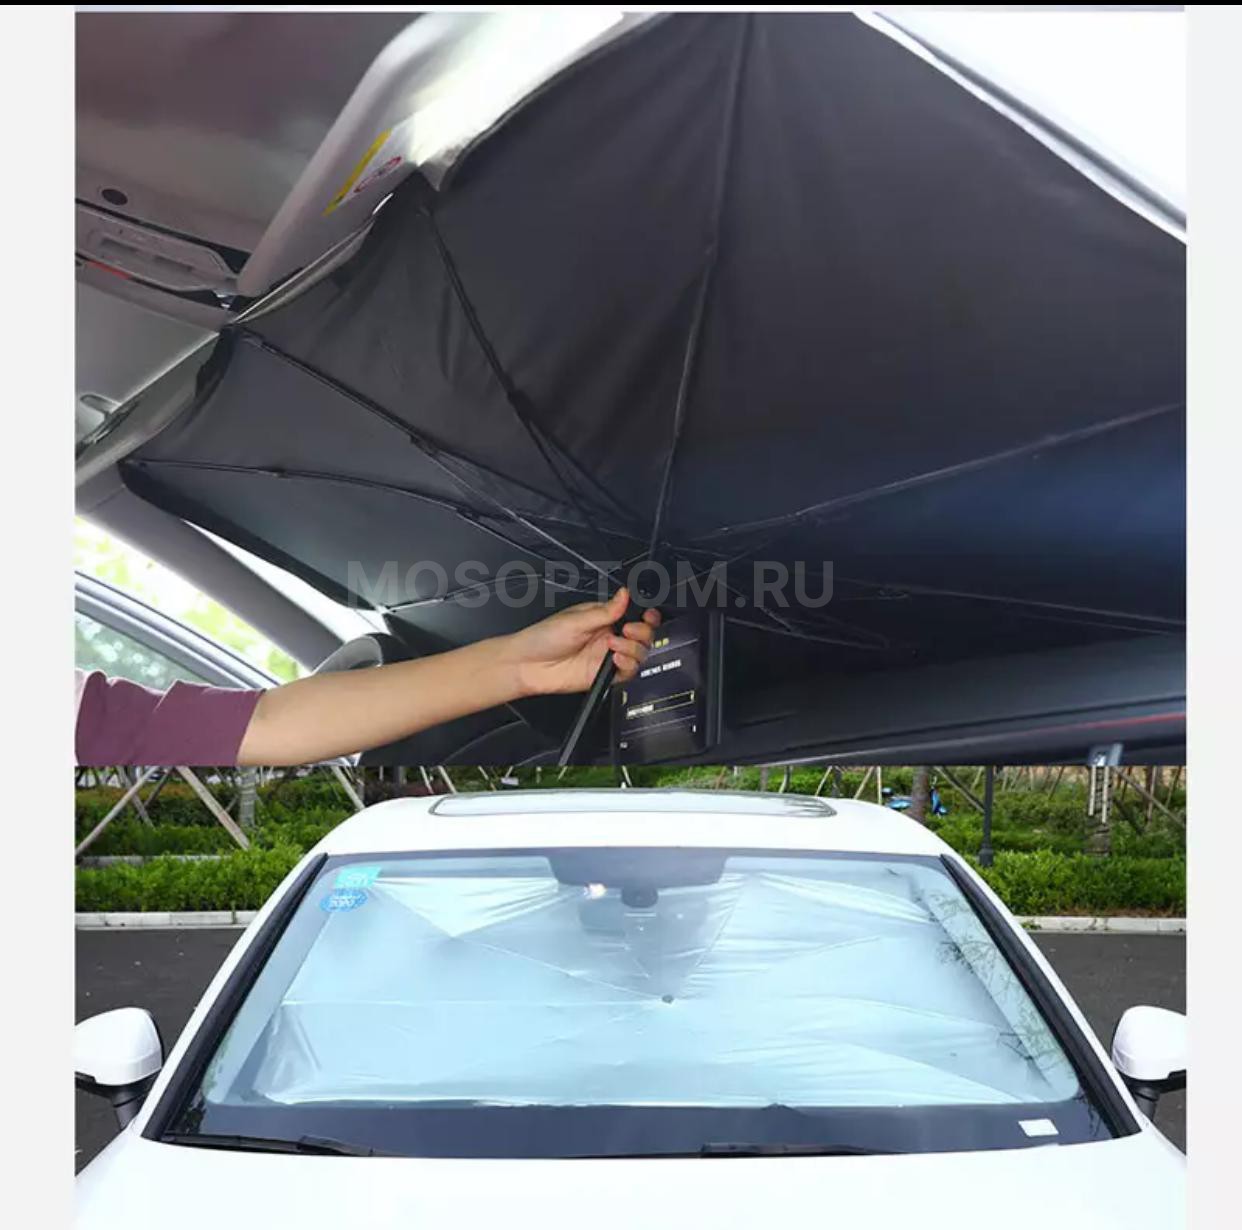 Солнцезащитный зонт для лобового стекла автомобиля 130-145х79см оптом - Фото №4